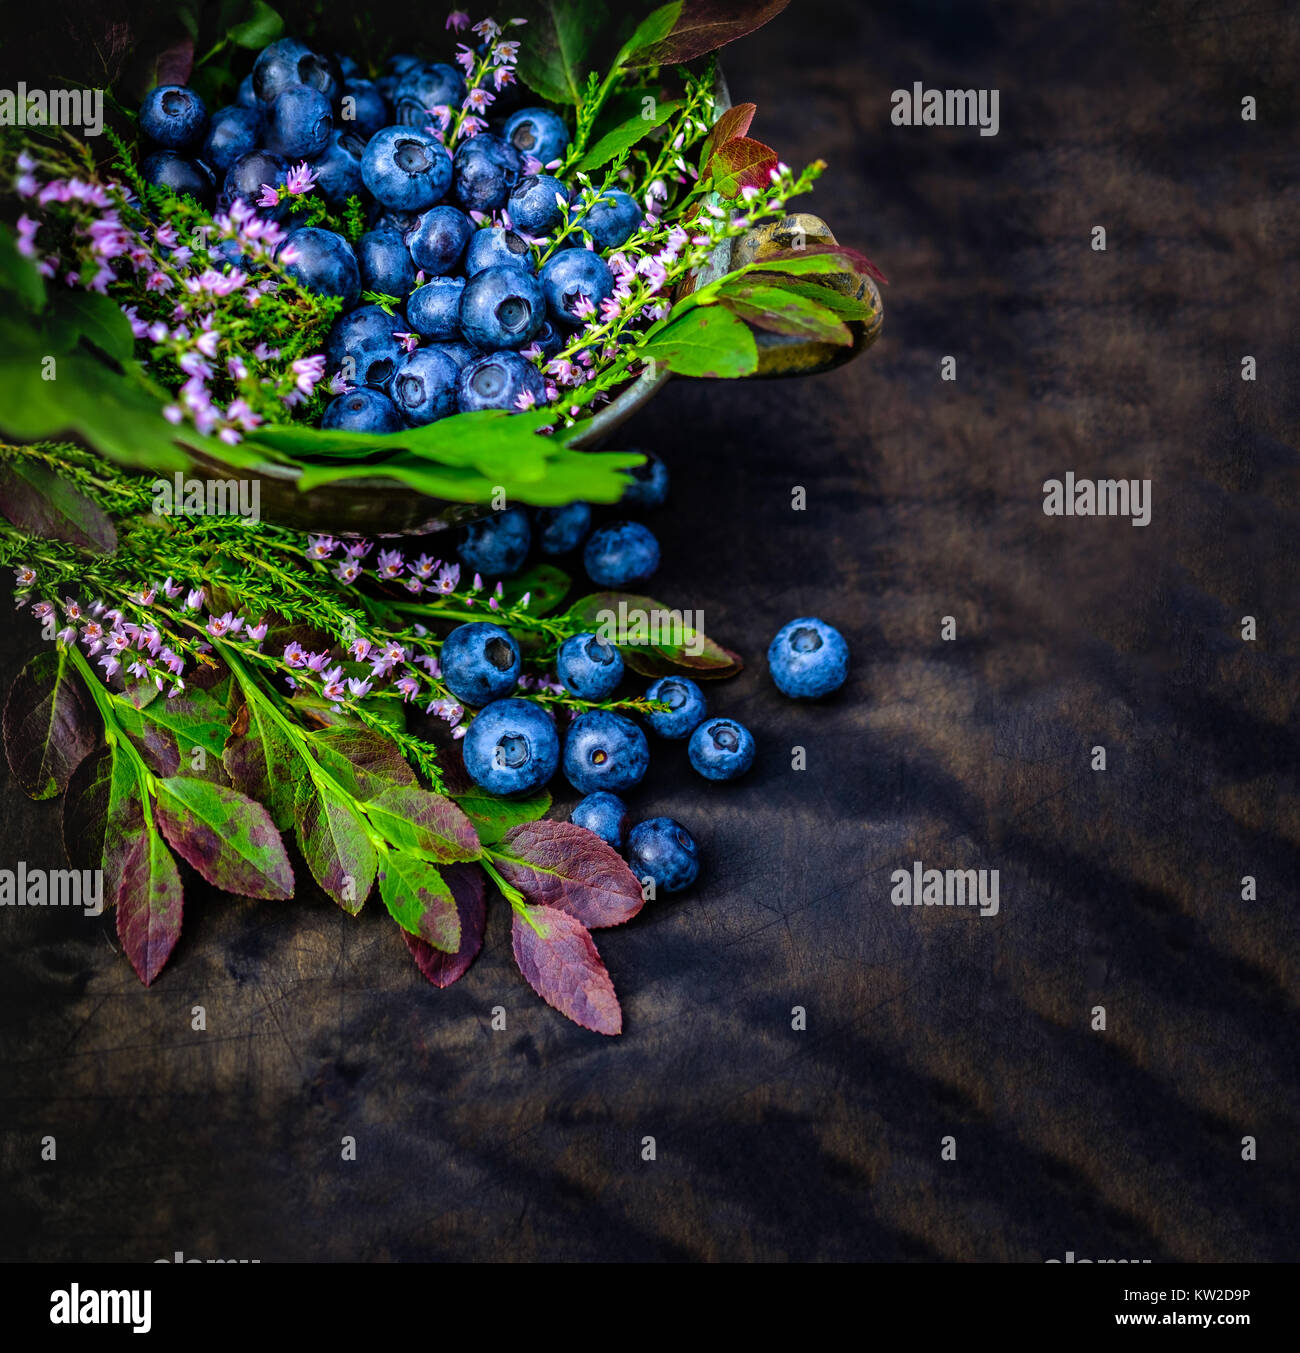 Des bleuets riches en antioxydants, des baies sauvages fraîches avec branches Banque D'Images